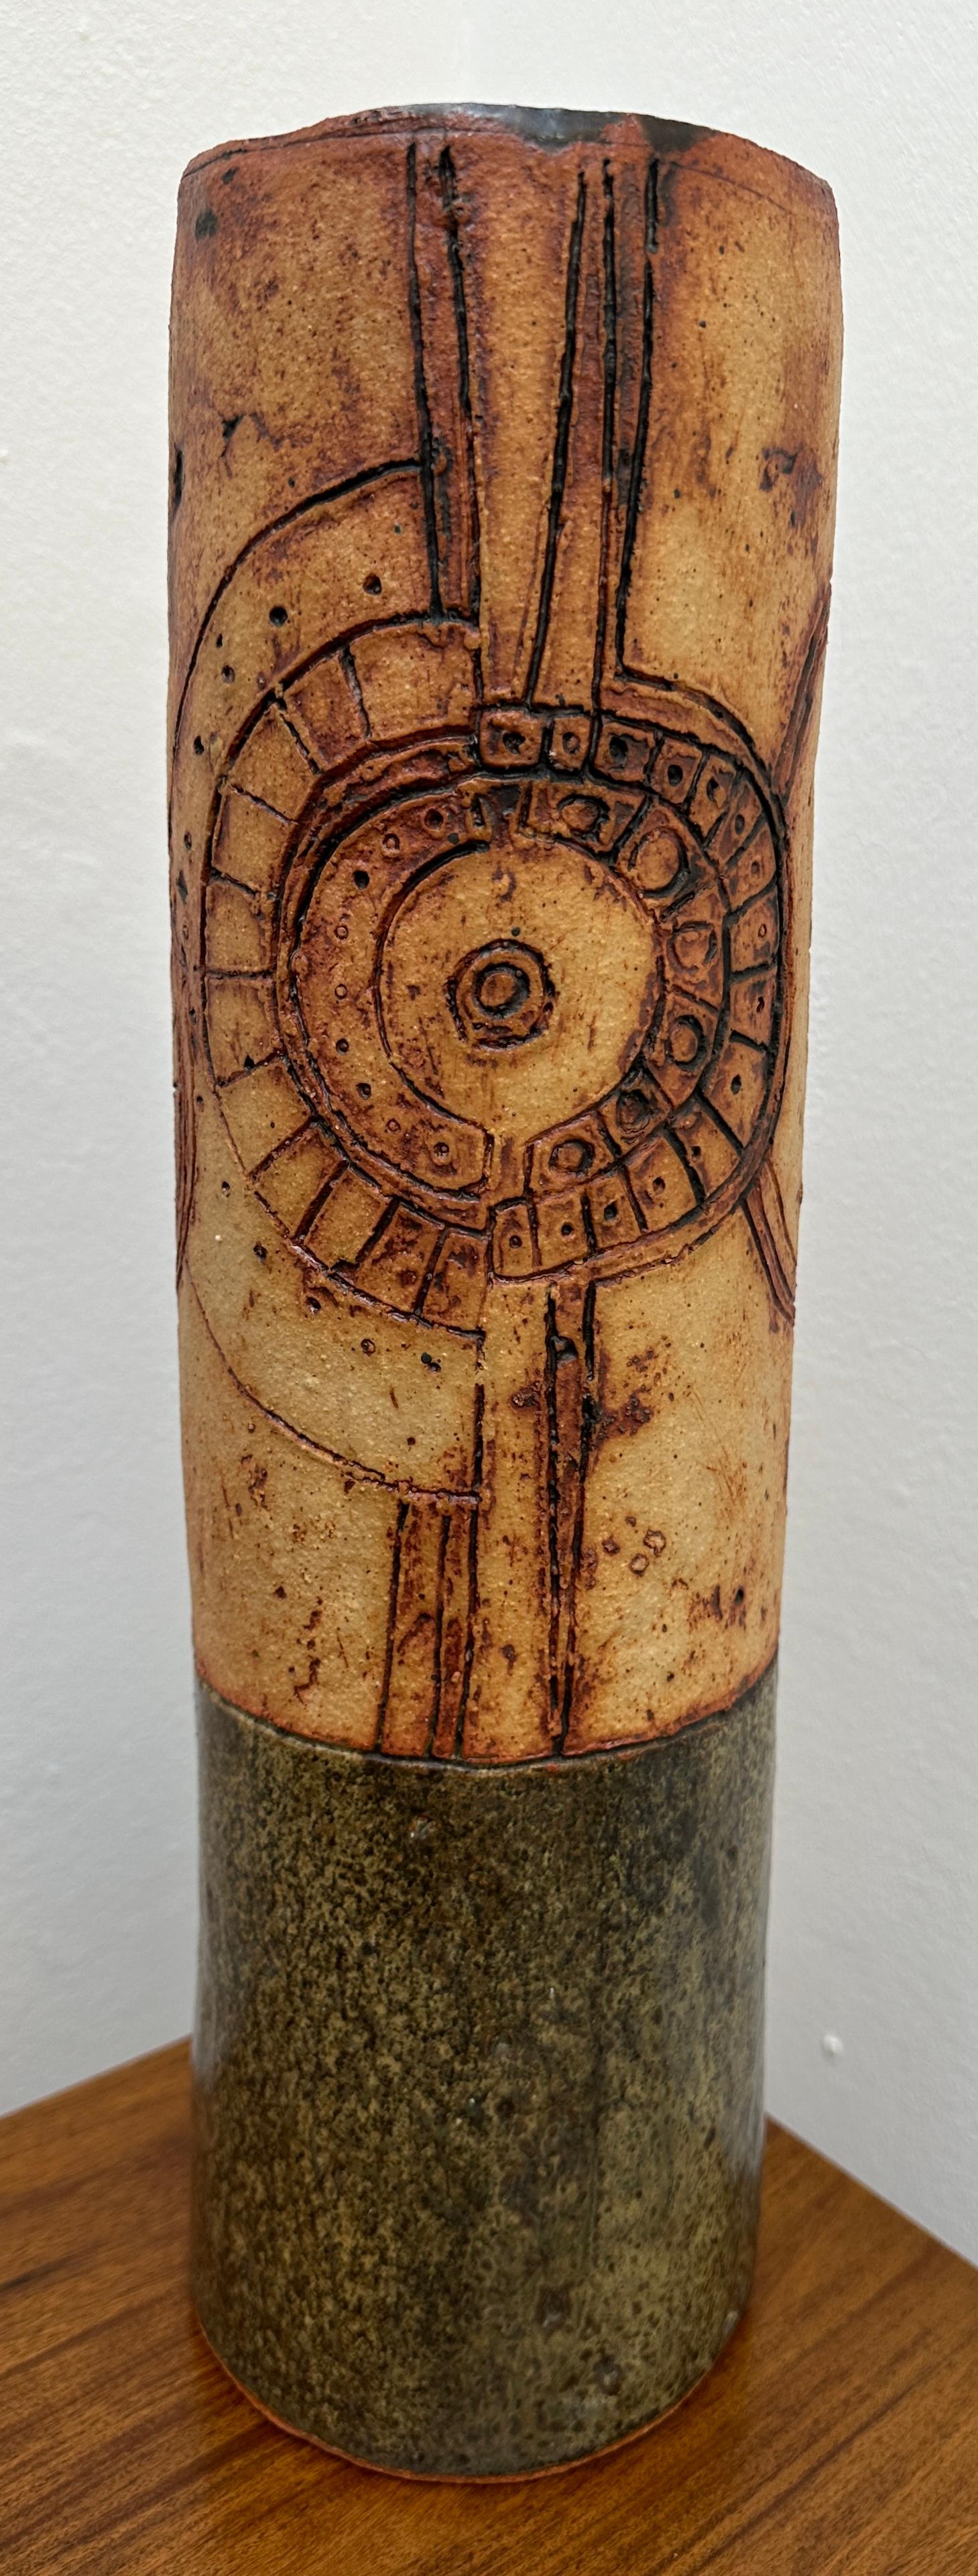 Eine große zylindrische Keramikvase des britischen Keramikers Bernard Rooke aus den 1960er Jahren von Studio Pottery im frühen Brutalismus.  In den oberen zwei Dritteln ist ein abstraktes Muster eingeschnitten, das an ein Ziffernblatt einer Uhr und